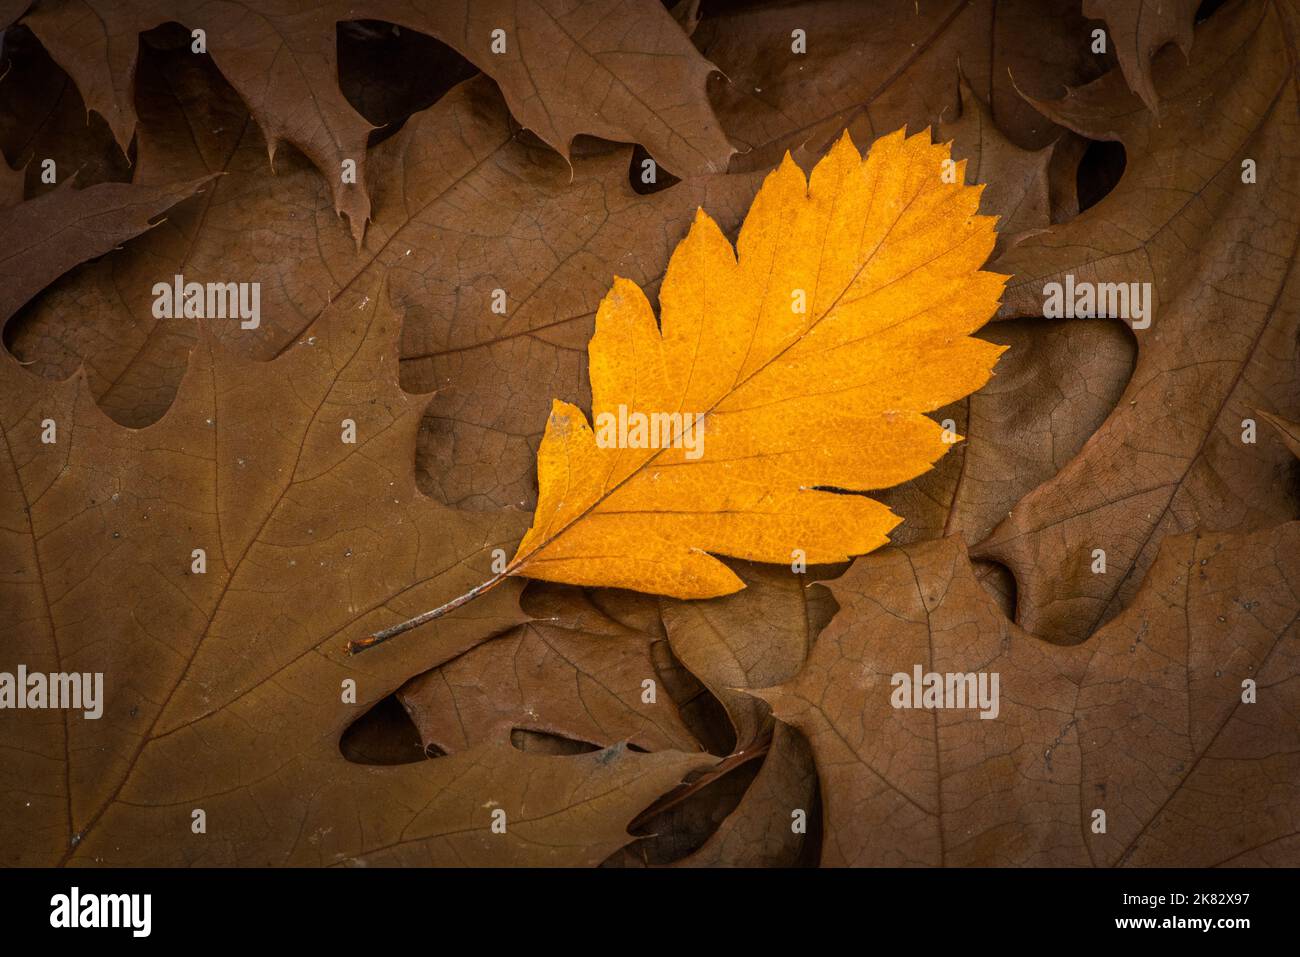 Farbenfrohe Herbstblatt Foto Hintergrund - Unterschied und abheben von Menschenmenge Konzept Stockfoto